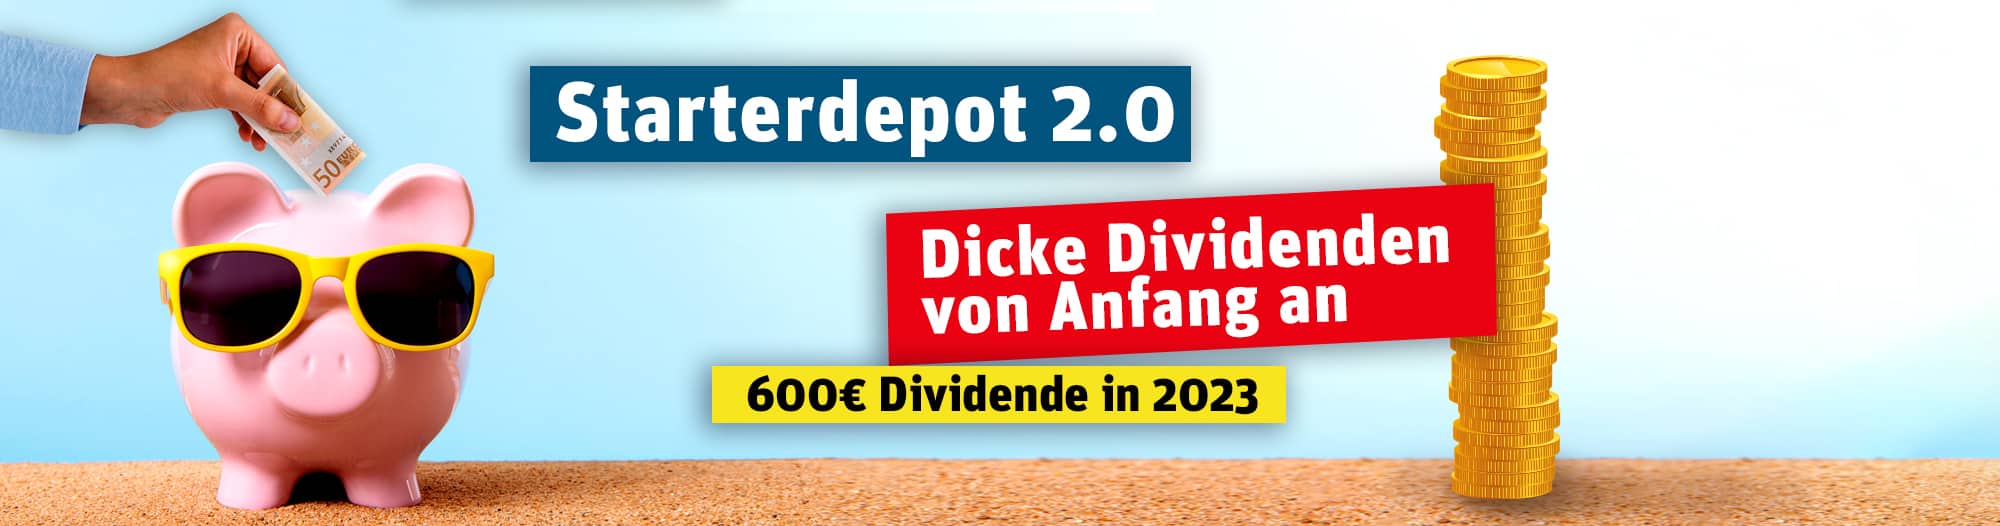 Das Dicke Dividenden Depot - 600 Euro Dividende in 2023 - Header